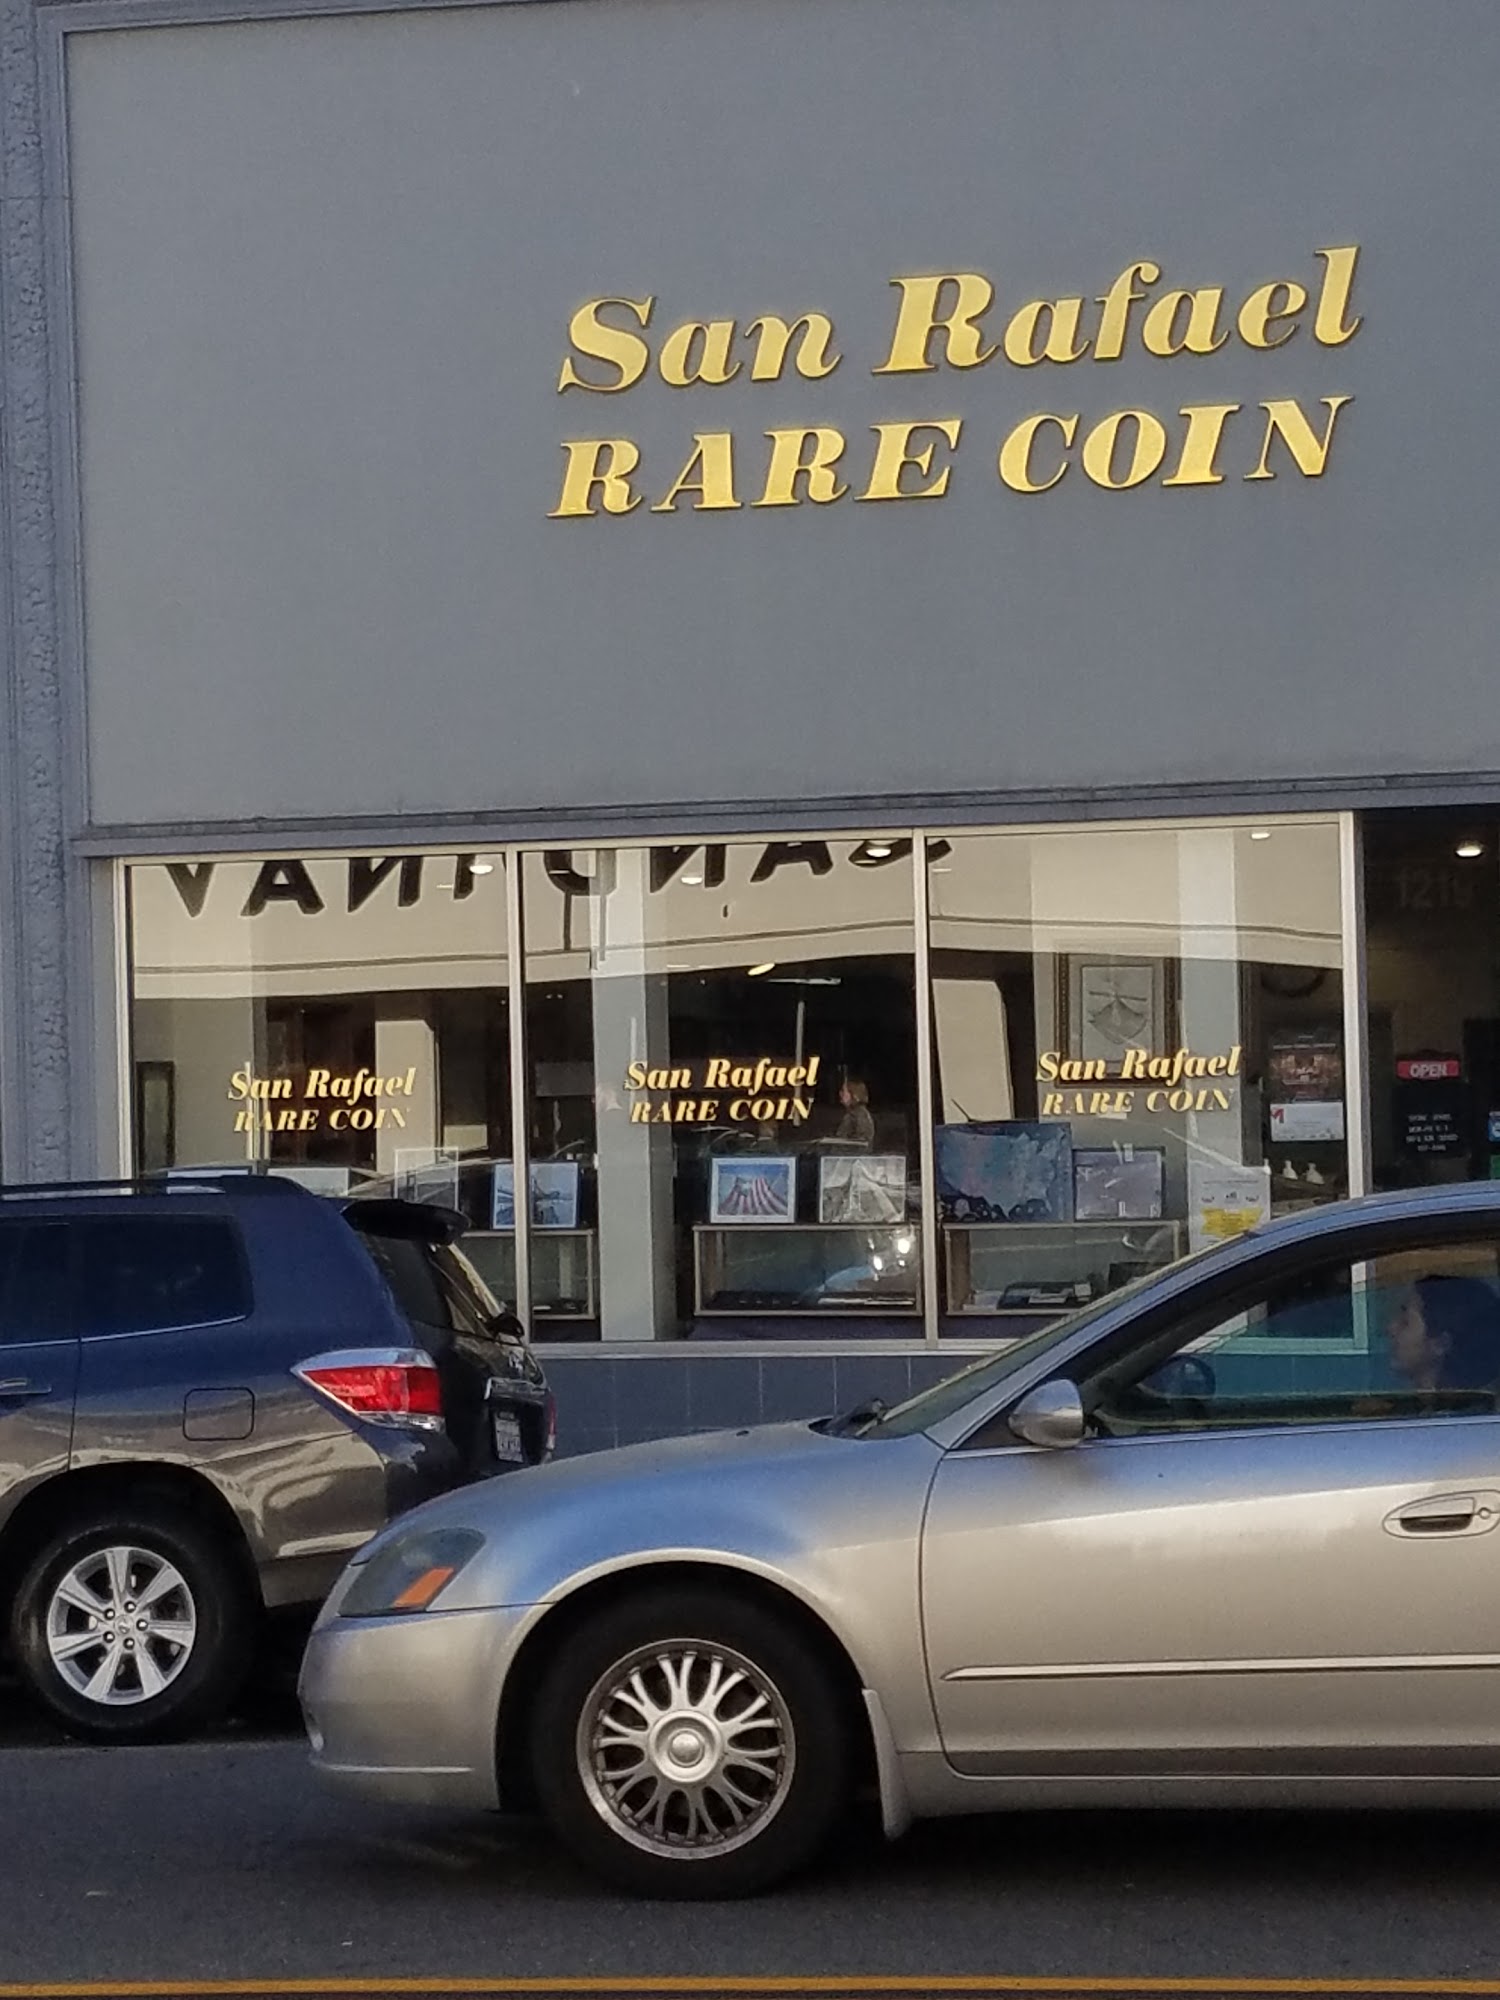 San Rafael Rare Coin Co.